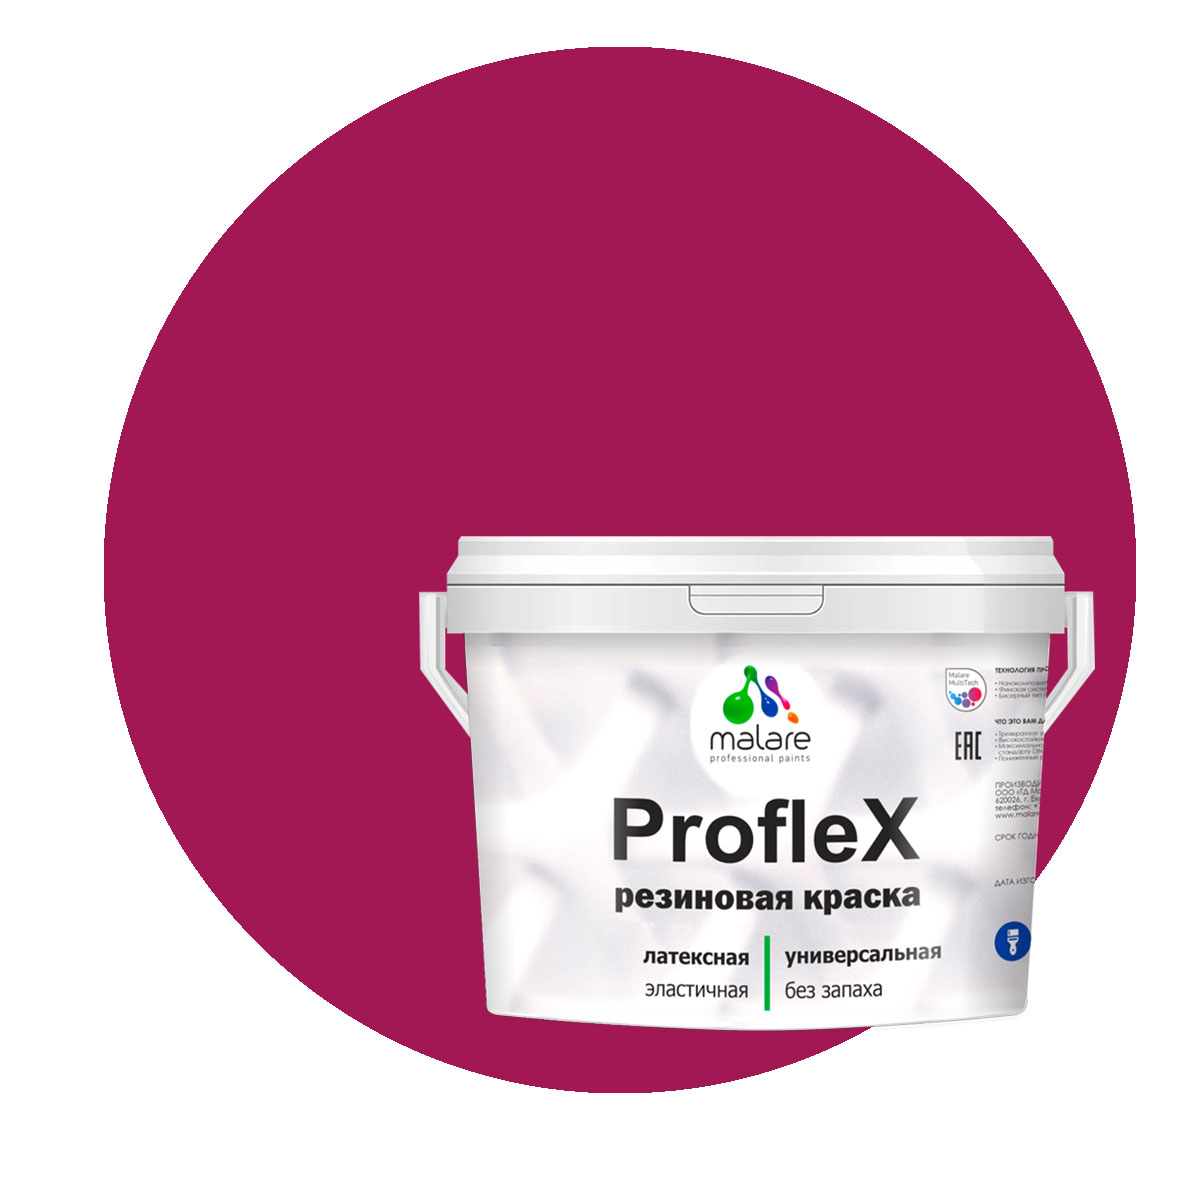 Краска Malare ProfleX для фасадов, интерьера, мебели, амарантово-пурпурный, 2 кг.